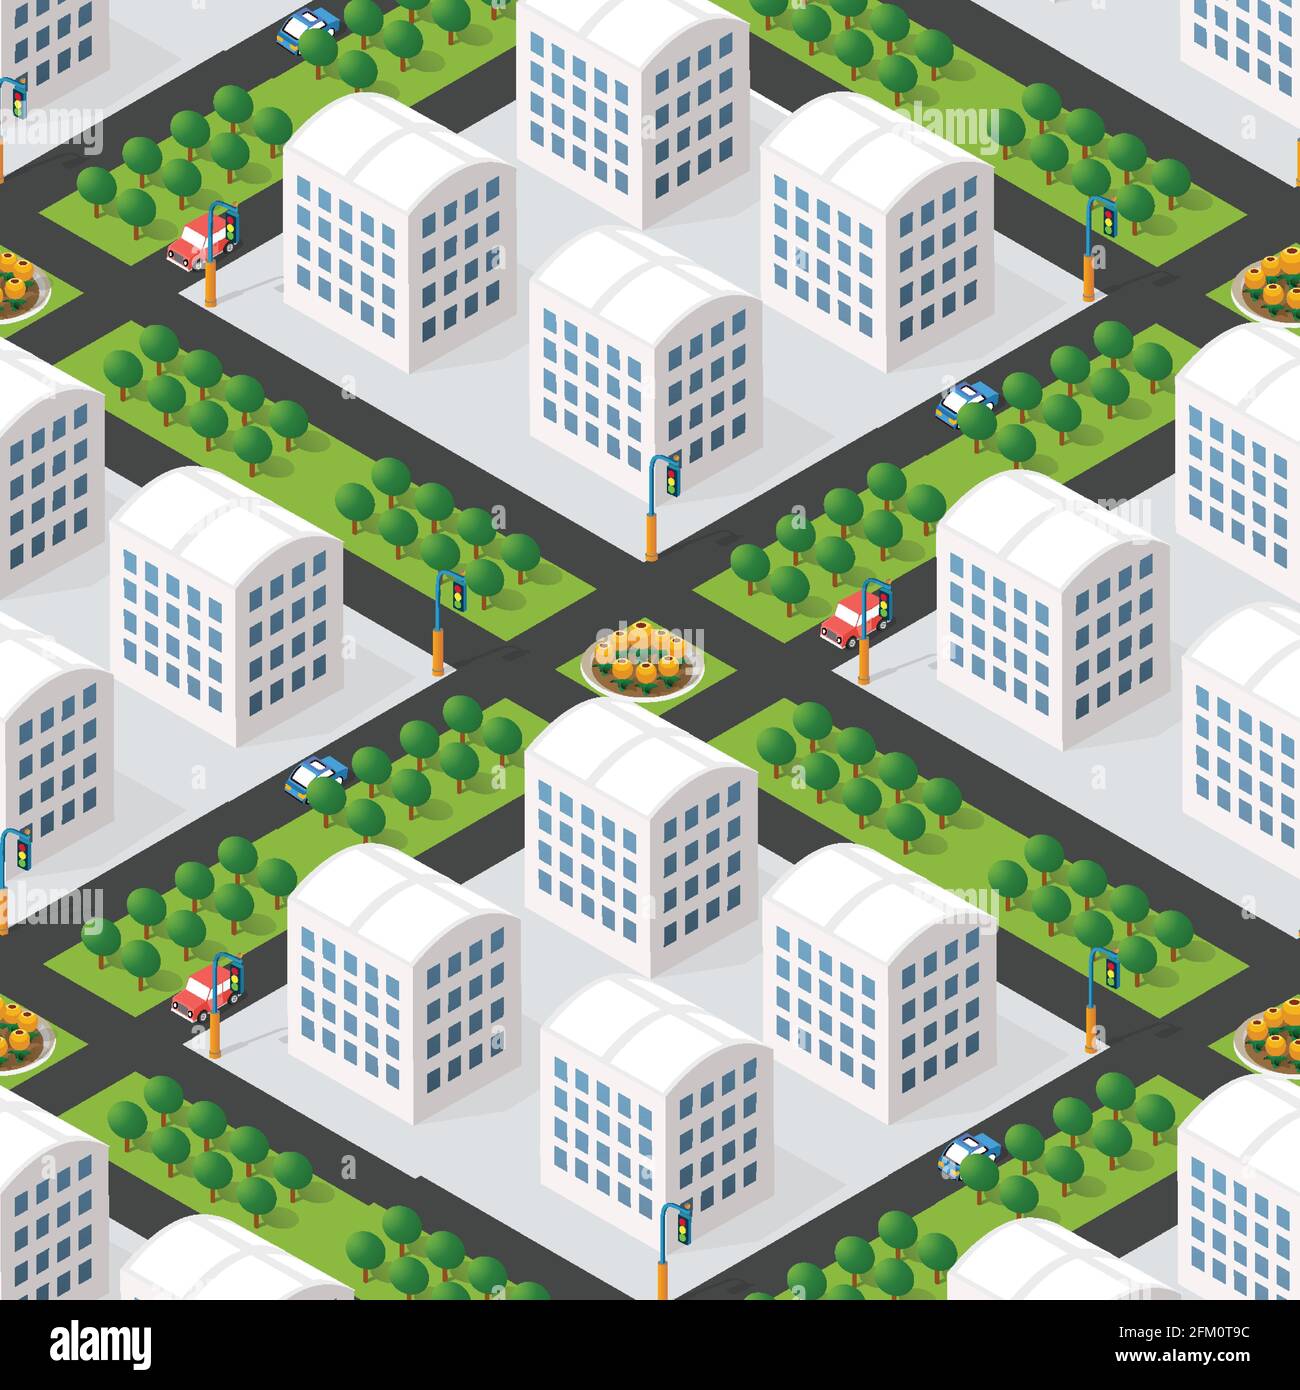 Vue isométrique urbaine illustration 3D d'une ville avec maisons, rues. Illustration de Vecteur